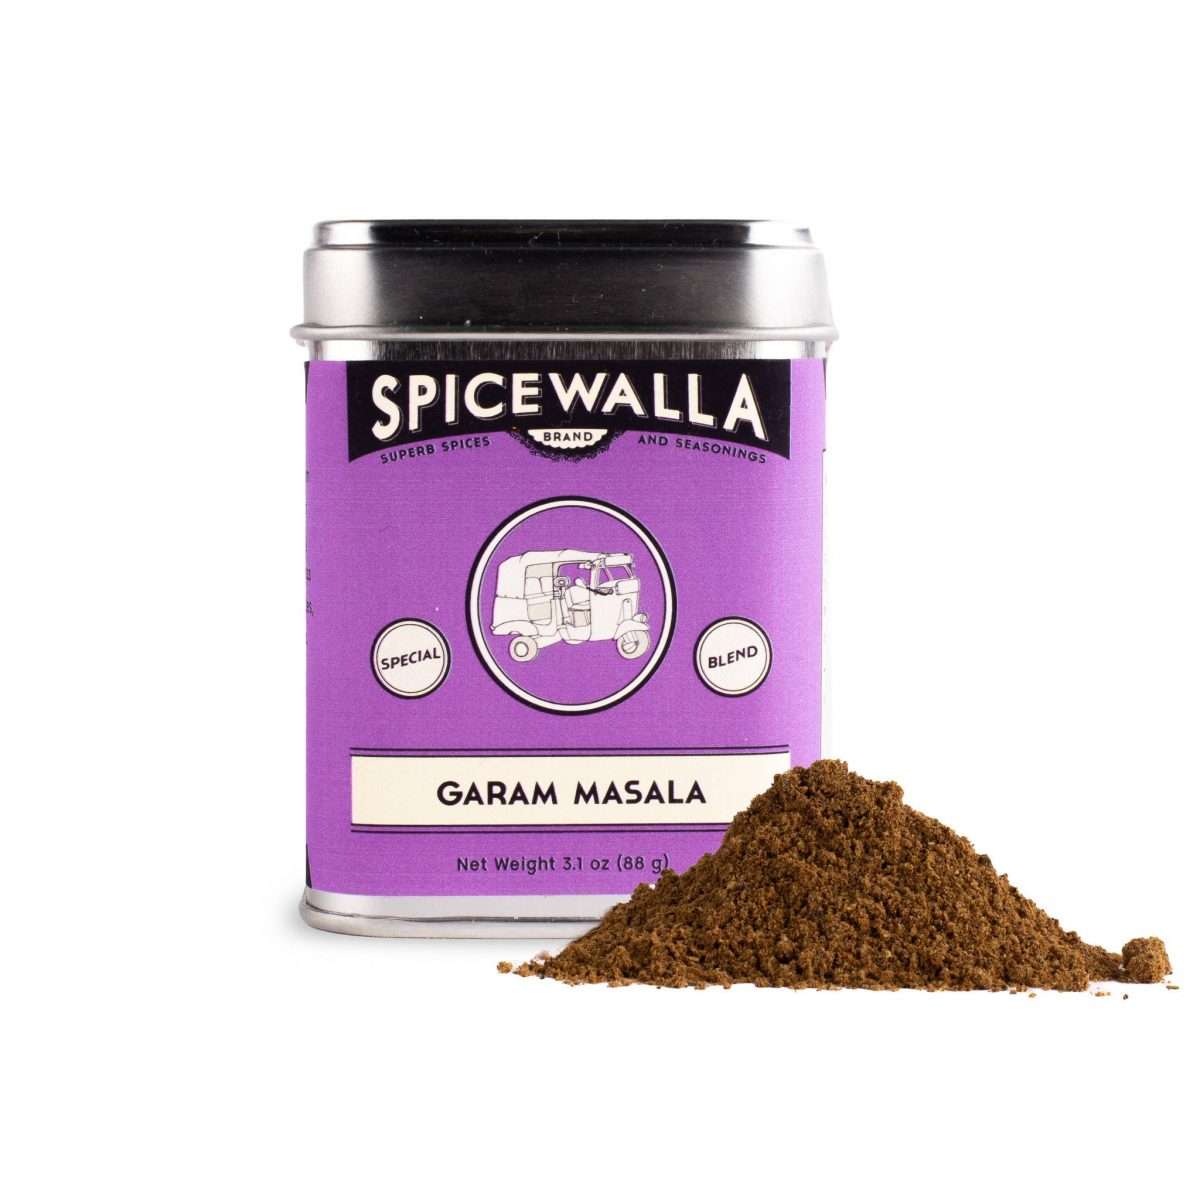 Spicewalla Garam masala spice in a large tin